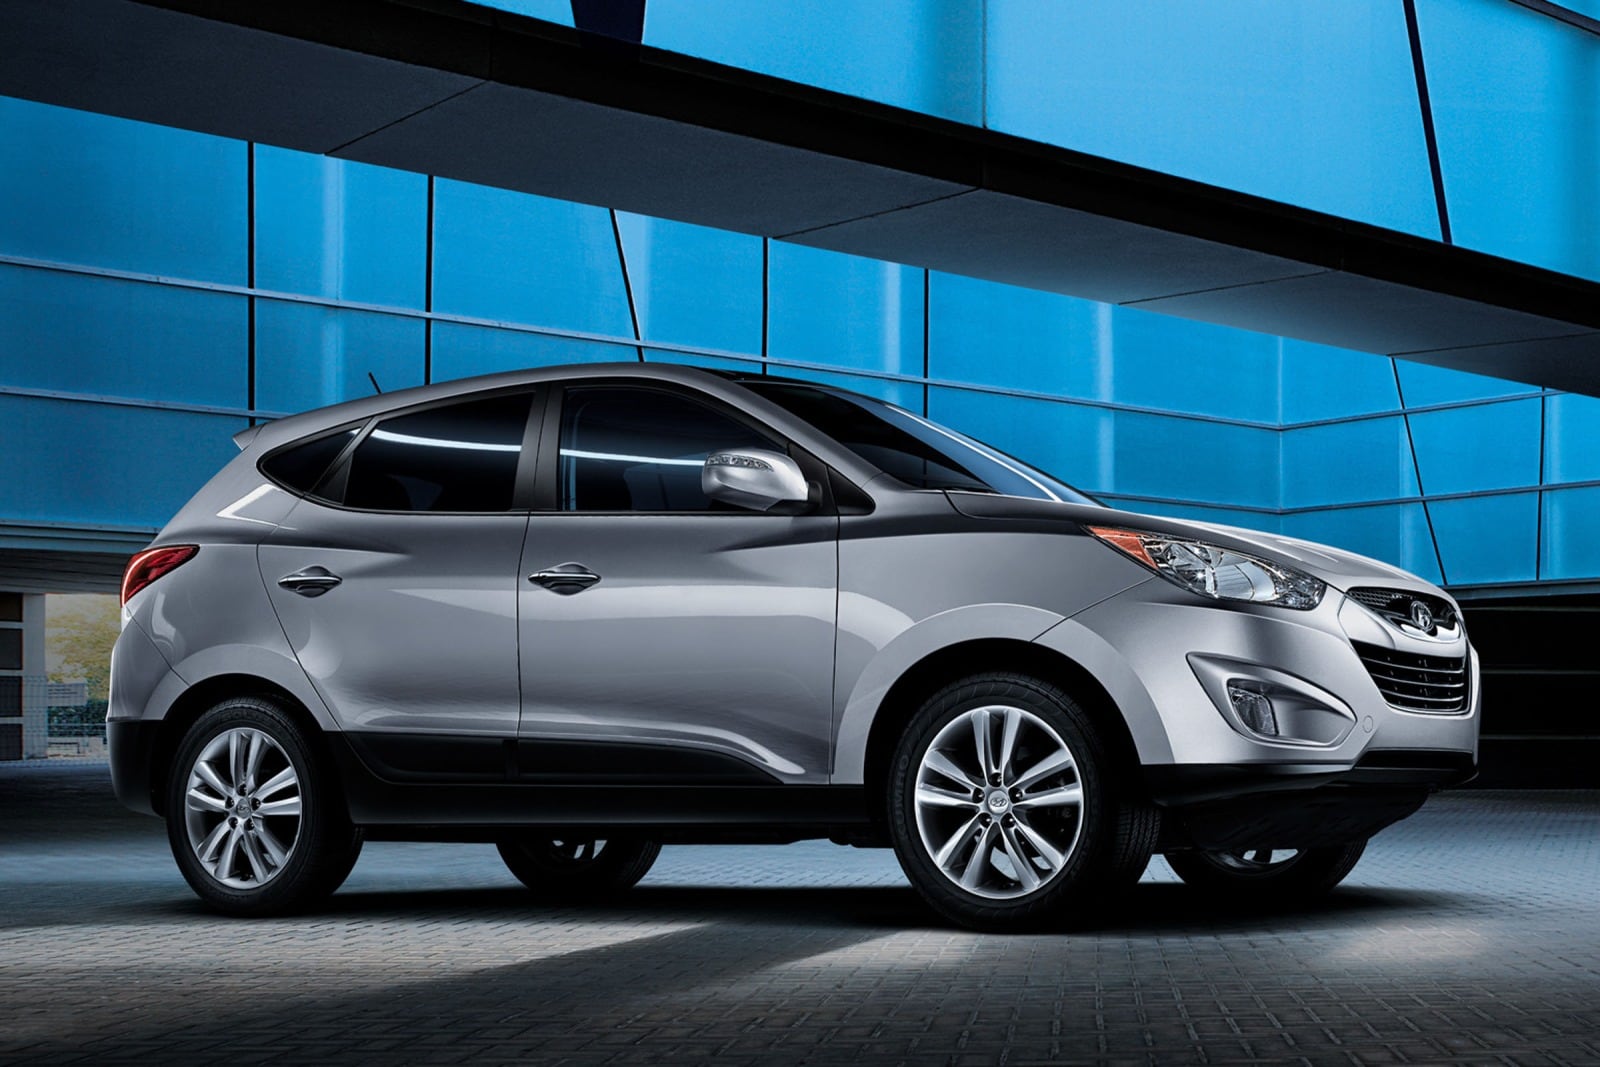 2013 Hyundai Tucson Review & Ratings | Edmunds